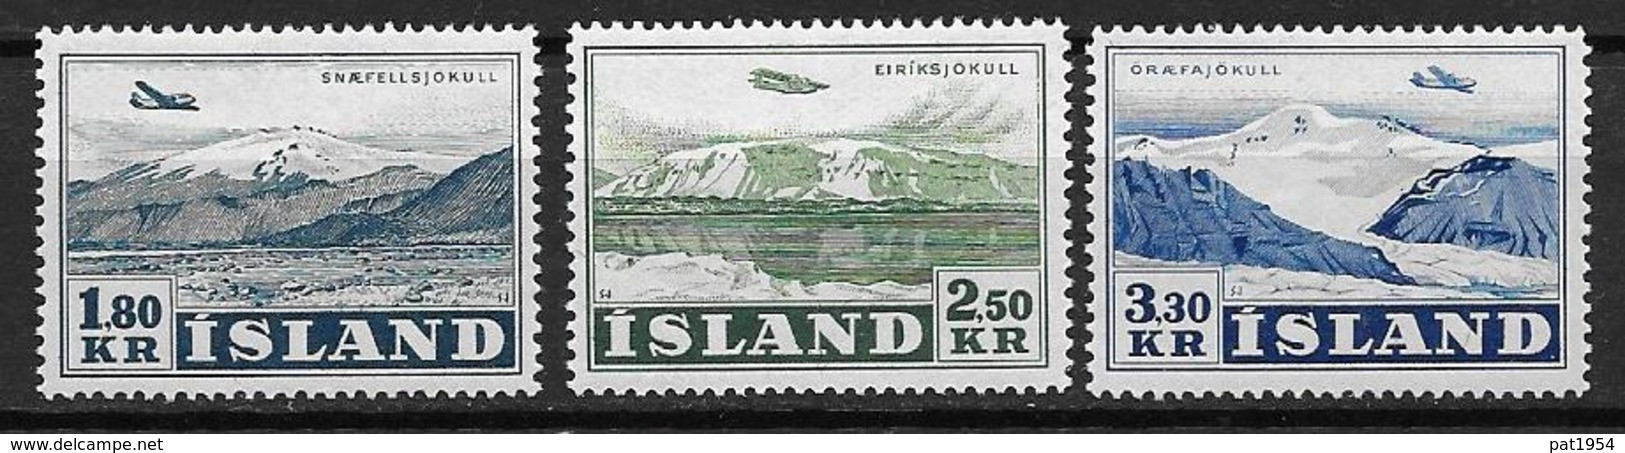 Islande 1952 Poste Aérienne N° 27/29 Neufs ** MNH, Avion Au Dessus De Glaciers - Luchtpost